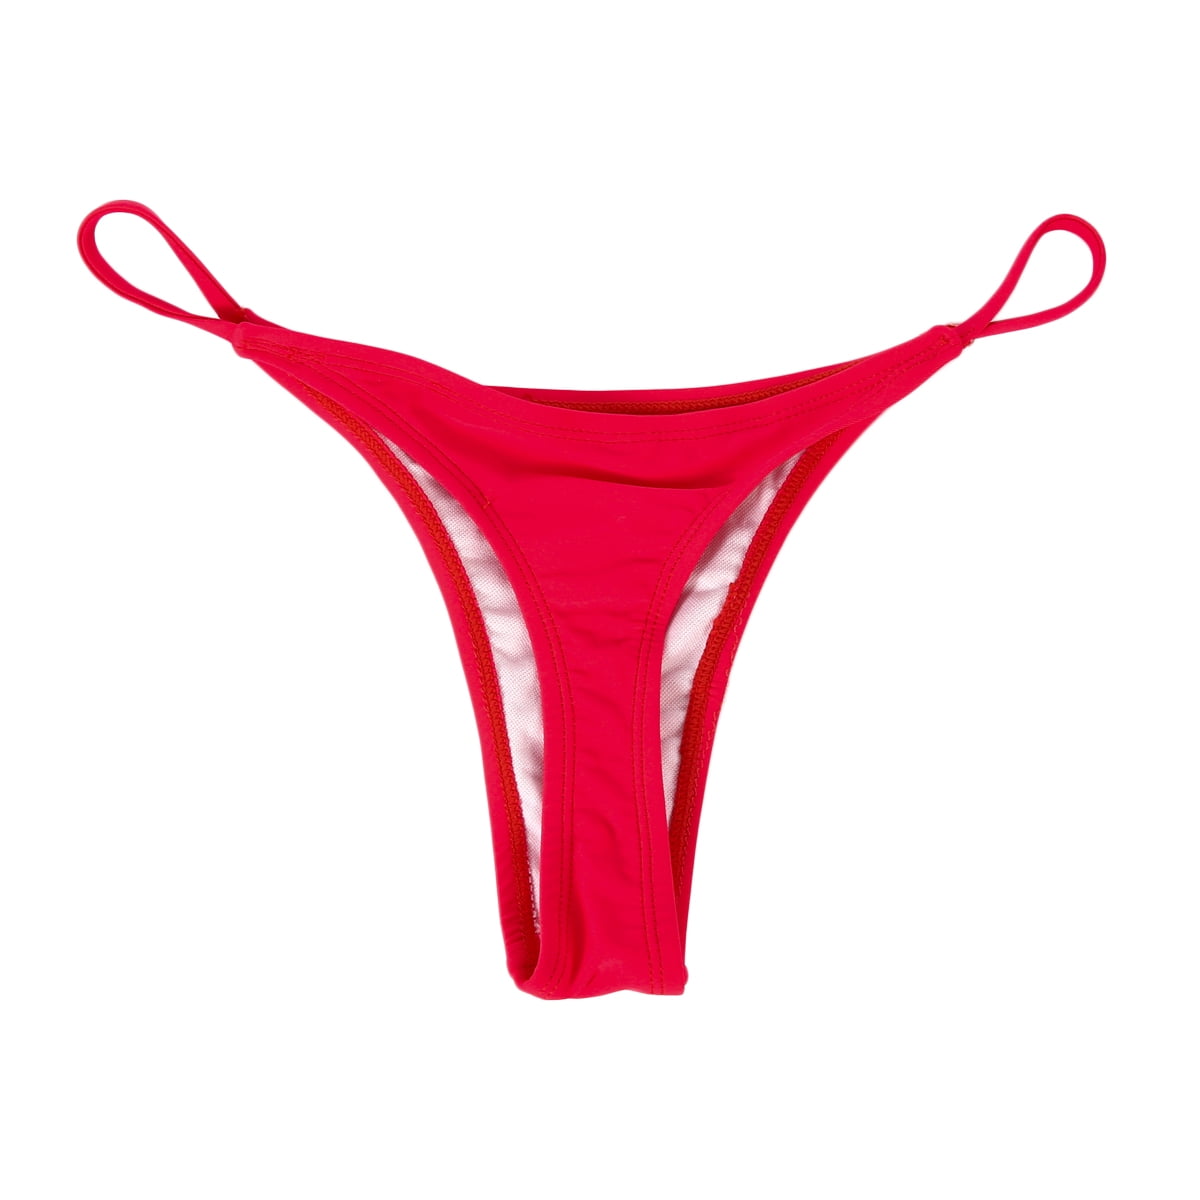 DuAnyozu - DuAnyozu Women Bikini Bottom G-String Brazilian Thongs ...